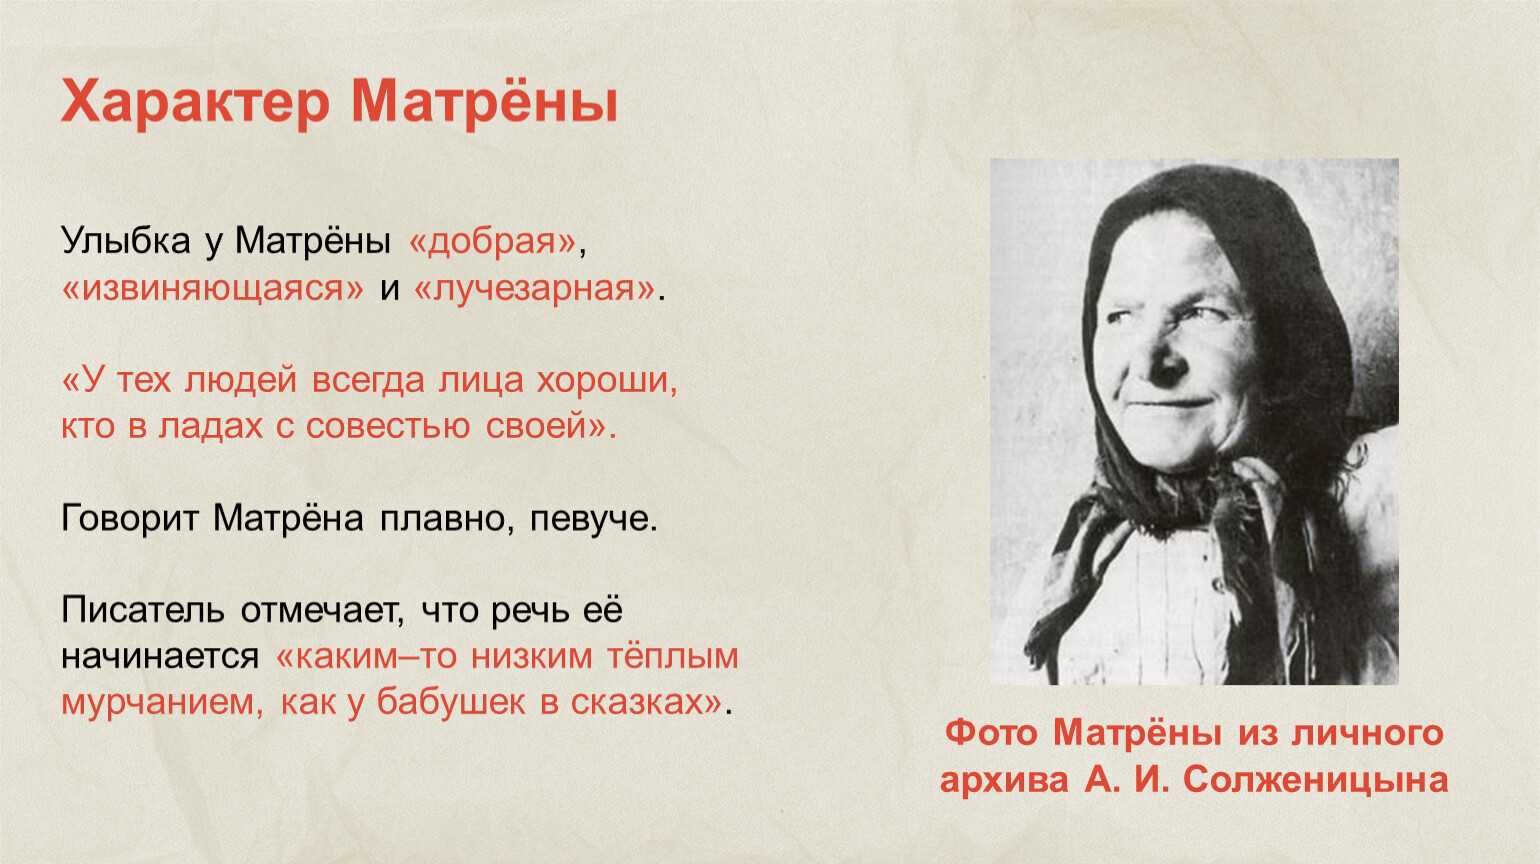 В ладах со своей совестью. Матрена Солженицын. Портрет Матрены. Характер Матрены. Улыбка Матрены.